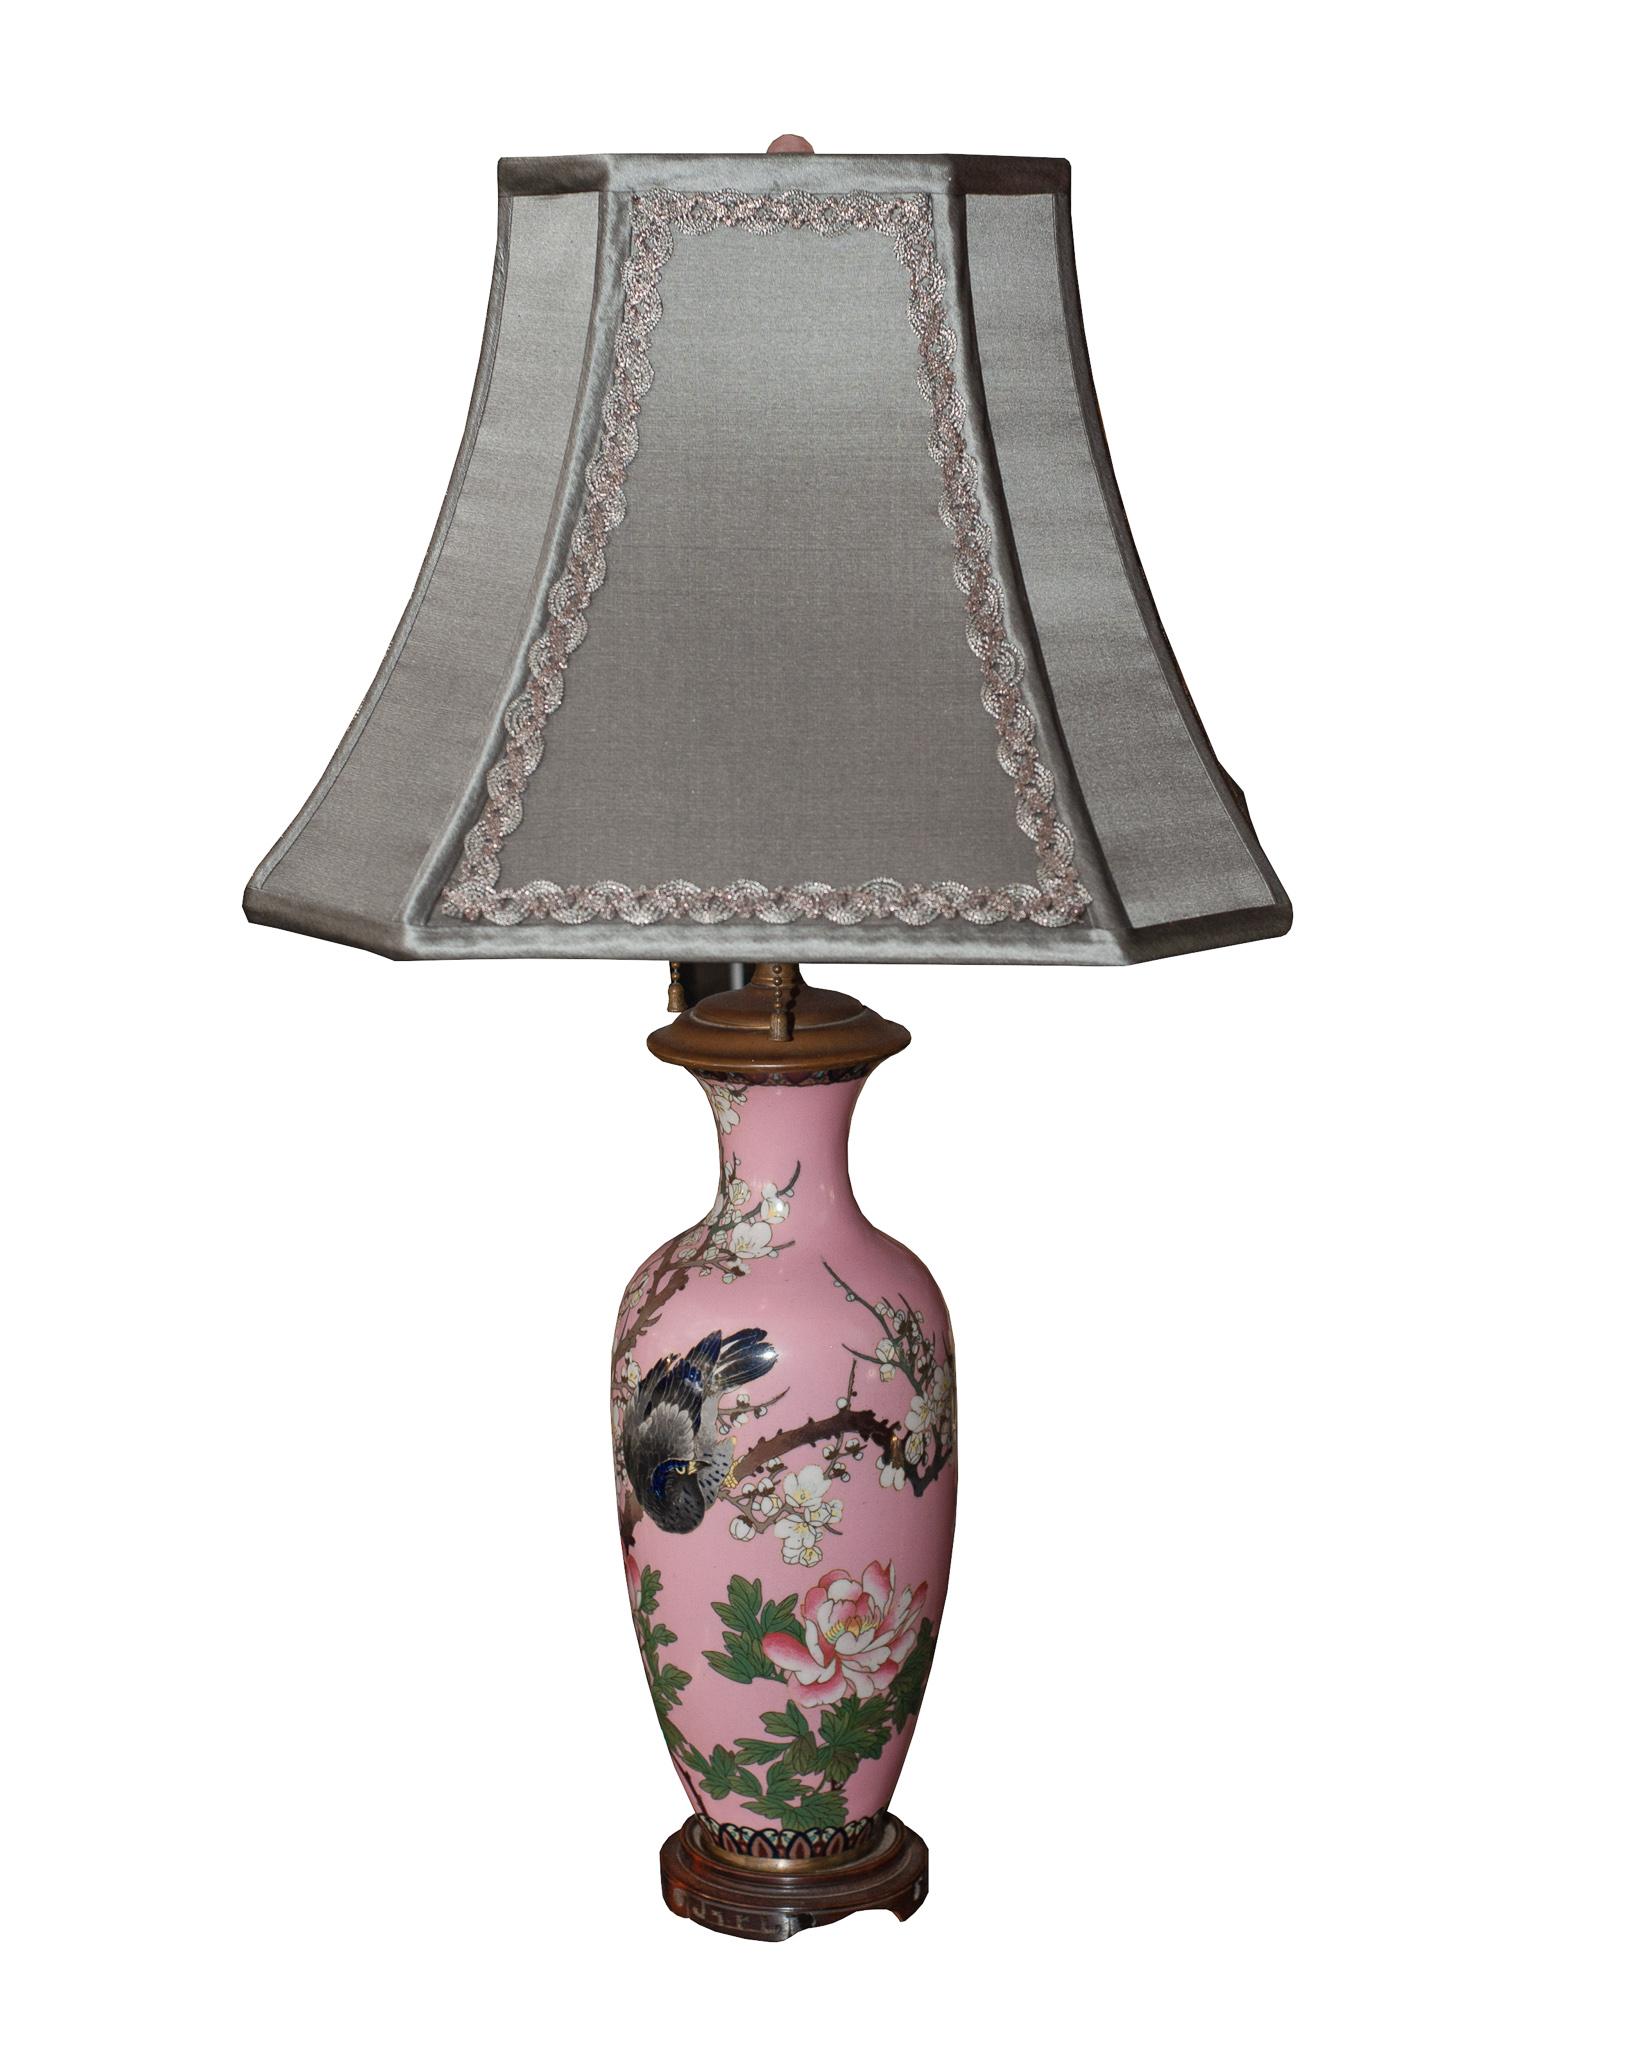 Dieses Paar antiker japanischer Porzellanlampen ist nicht nur wegen seiner Kunstfertigkeit, sondern auch wegen seiner schönen, ungewöhnlichen rosa Farbe äußerst selten und wertvoll. Töpferwaren und Porzellan sind eine der ältesten japanischen